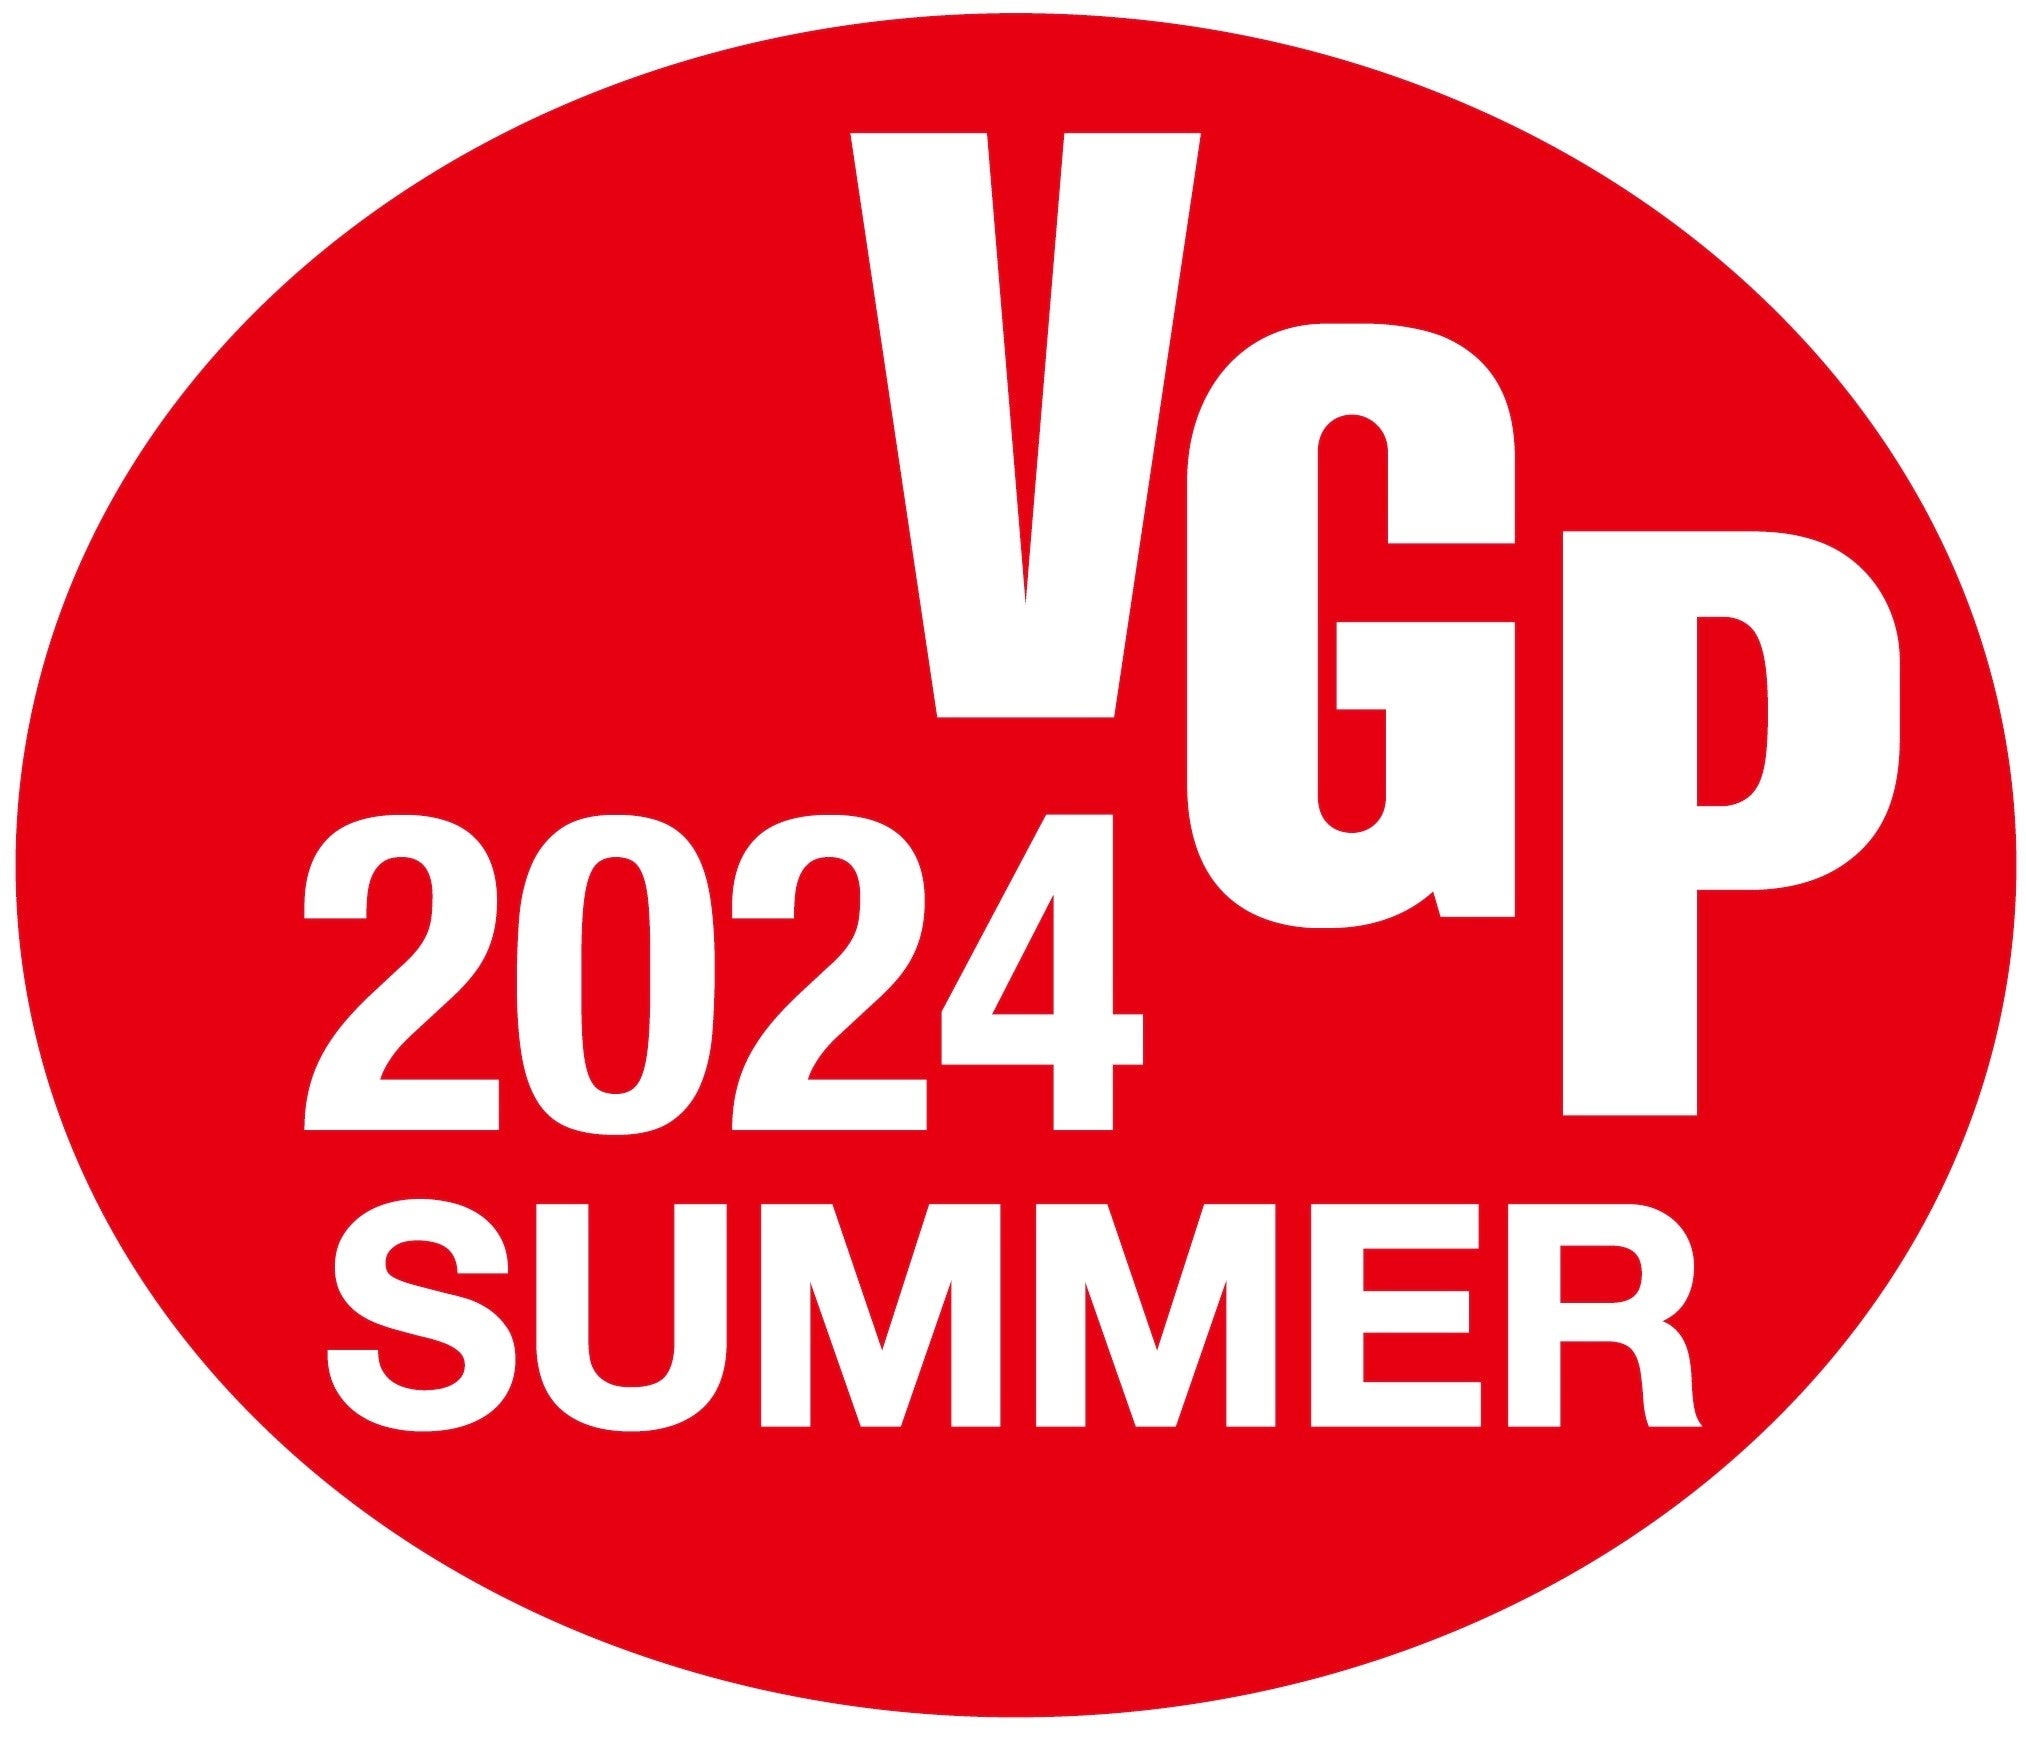 プロの視点で優れたオーディオビジュアル機器を選定、アワード「VGP2024 SUMMER」の授賞結果発表